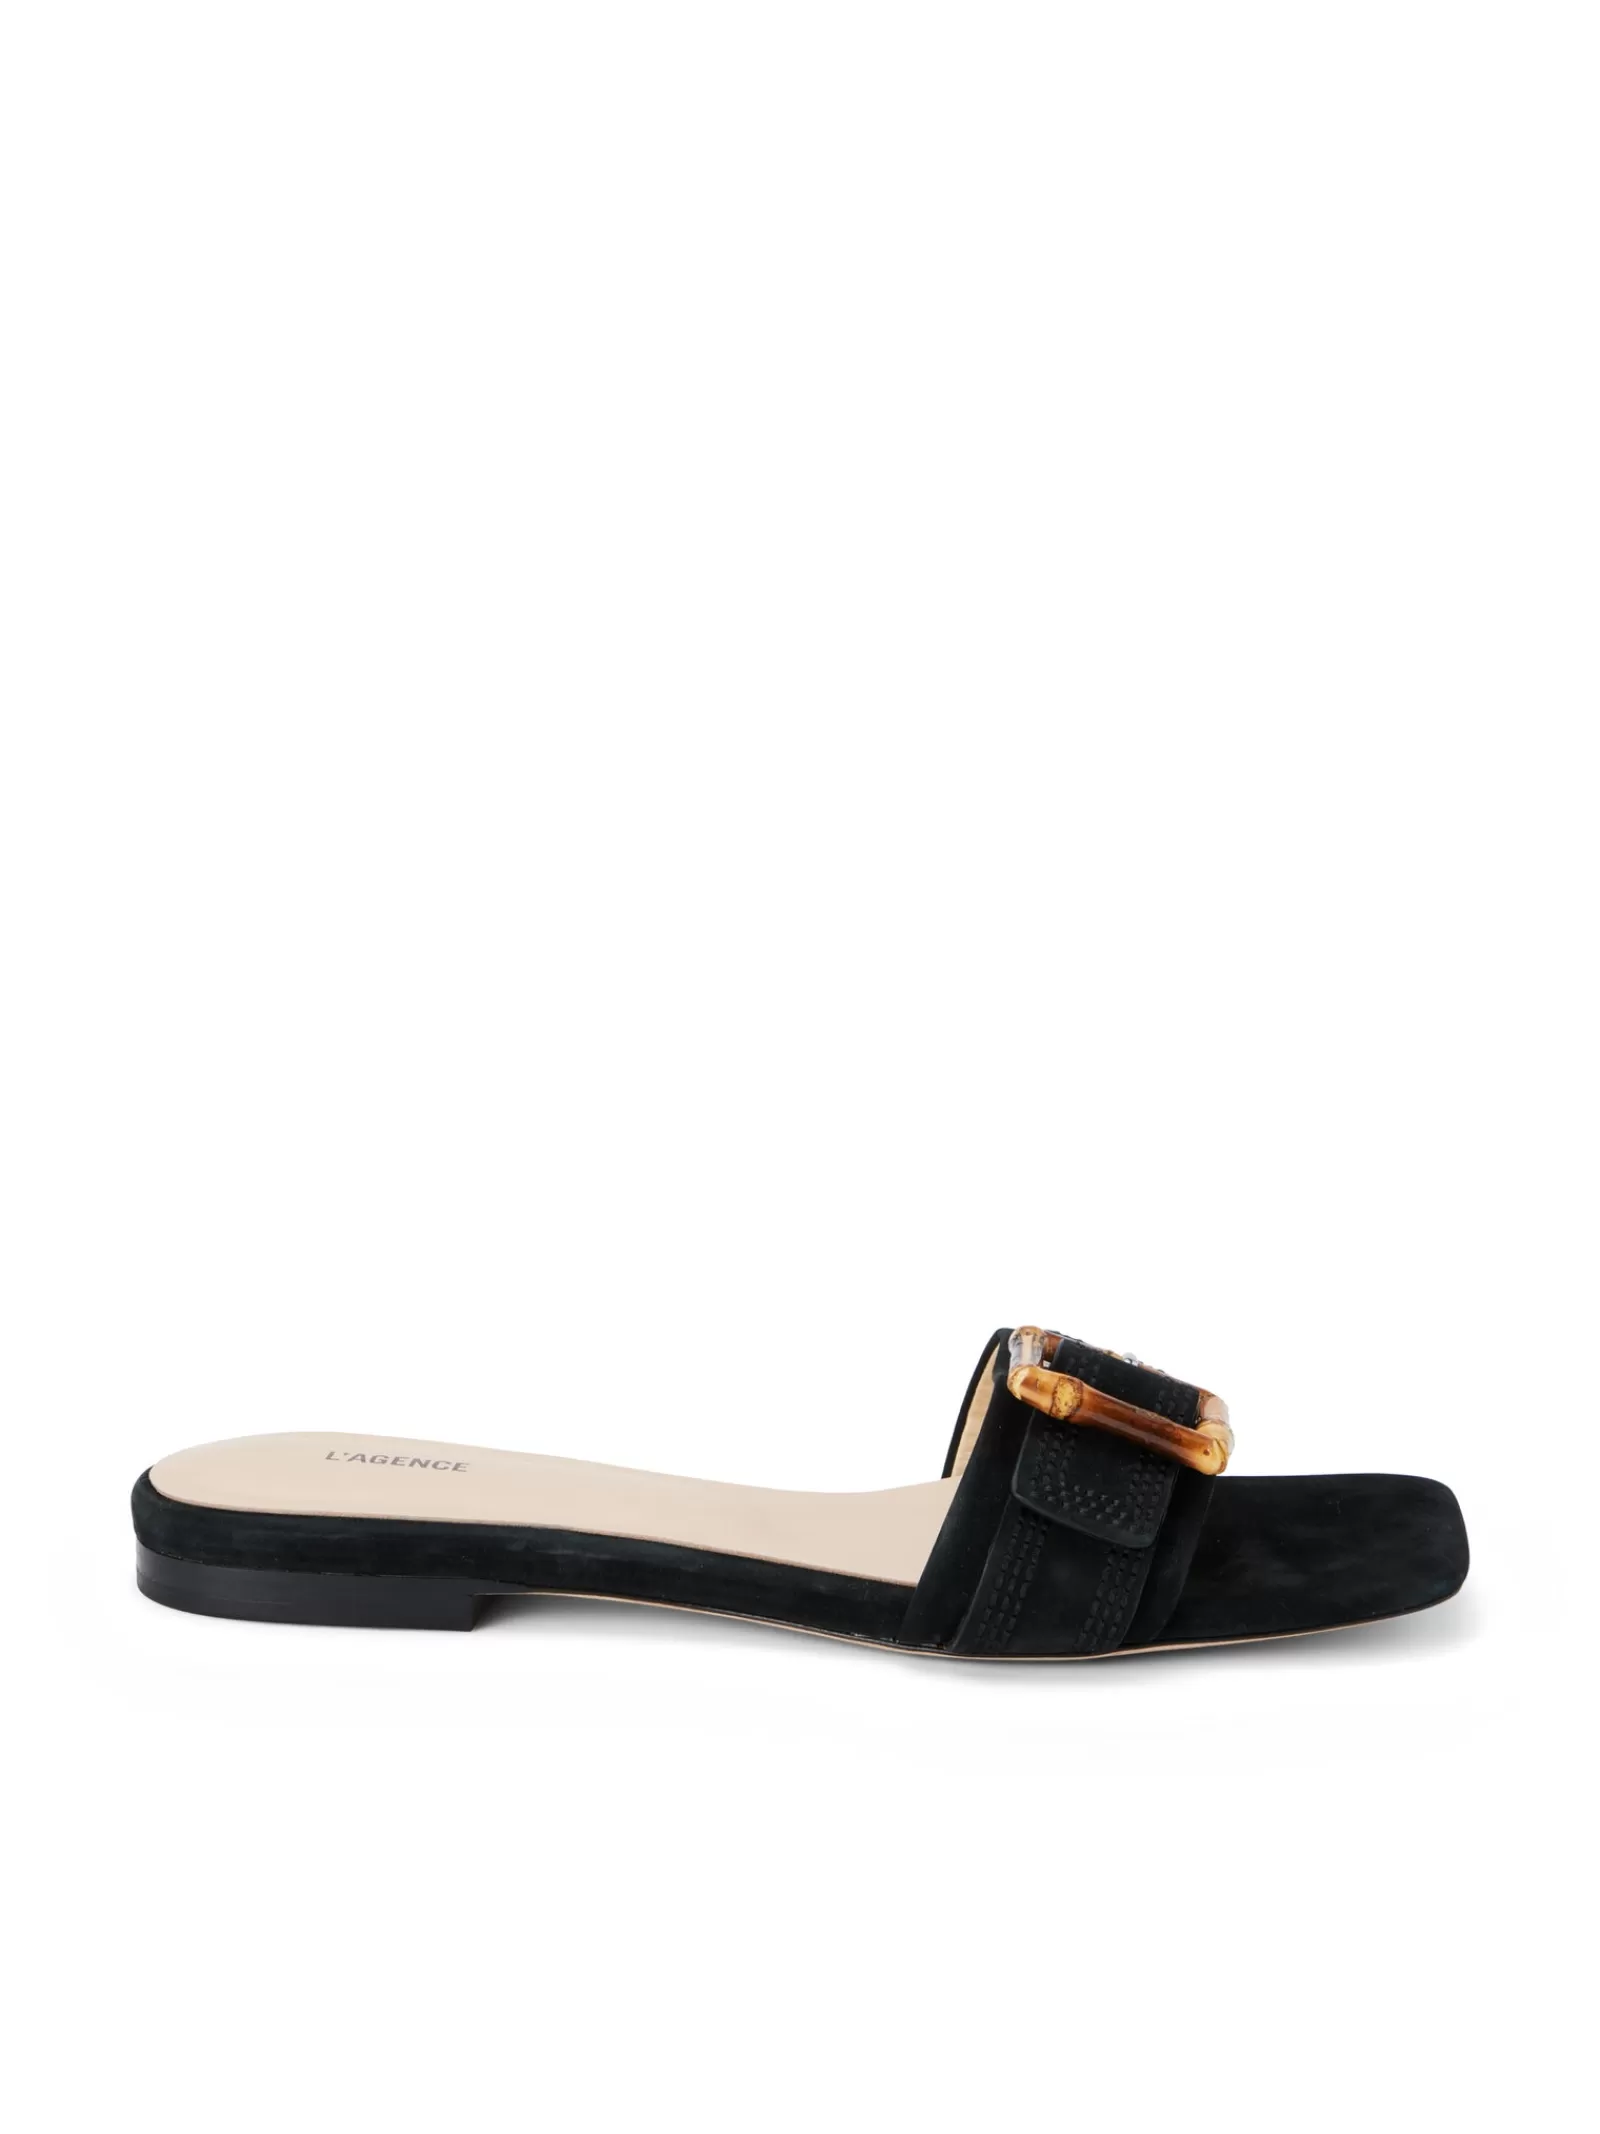 L'AGENCE Aurelie Buckle Slide Sandal< Spring Collection | Sandals & Wedges